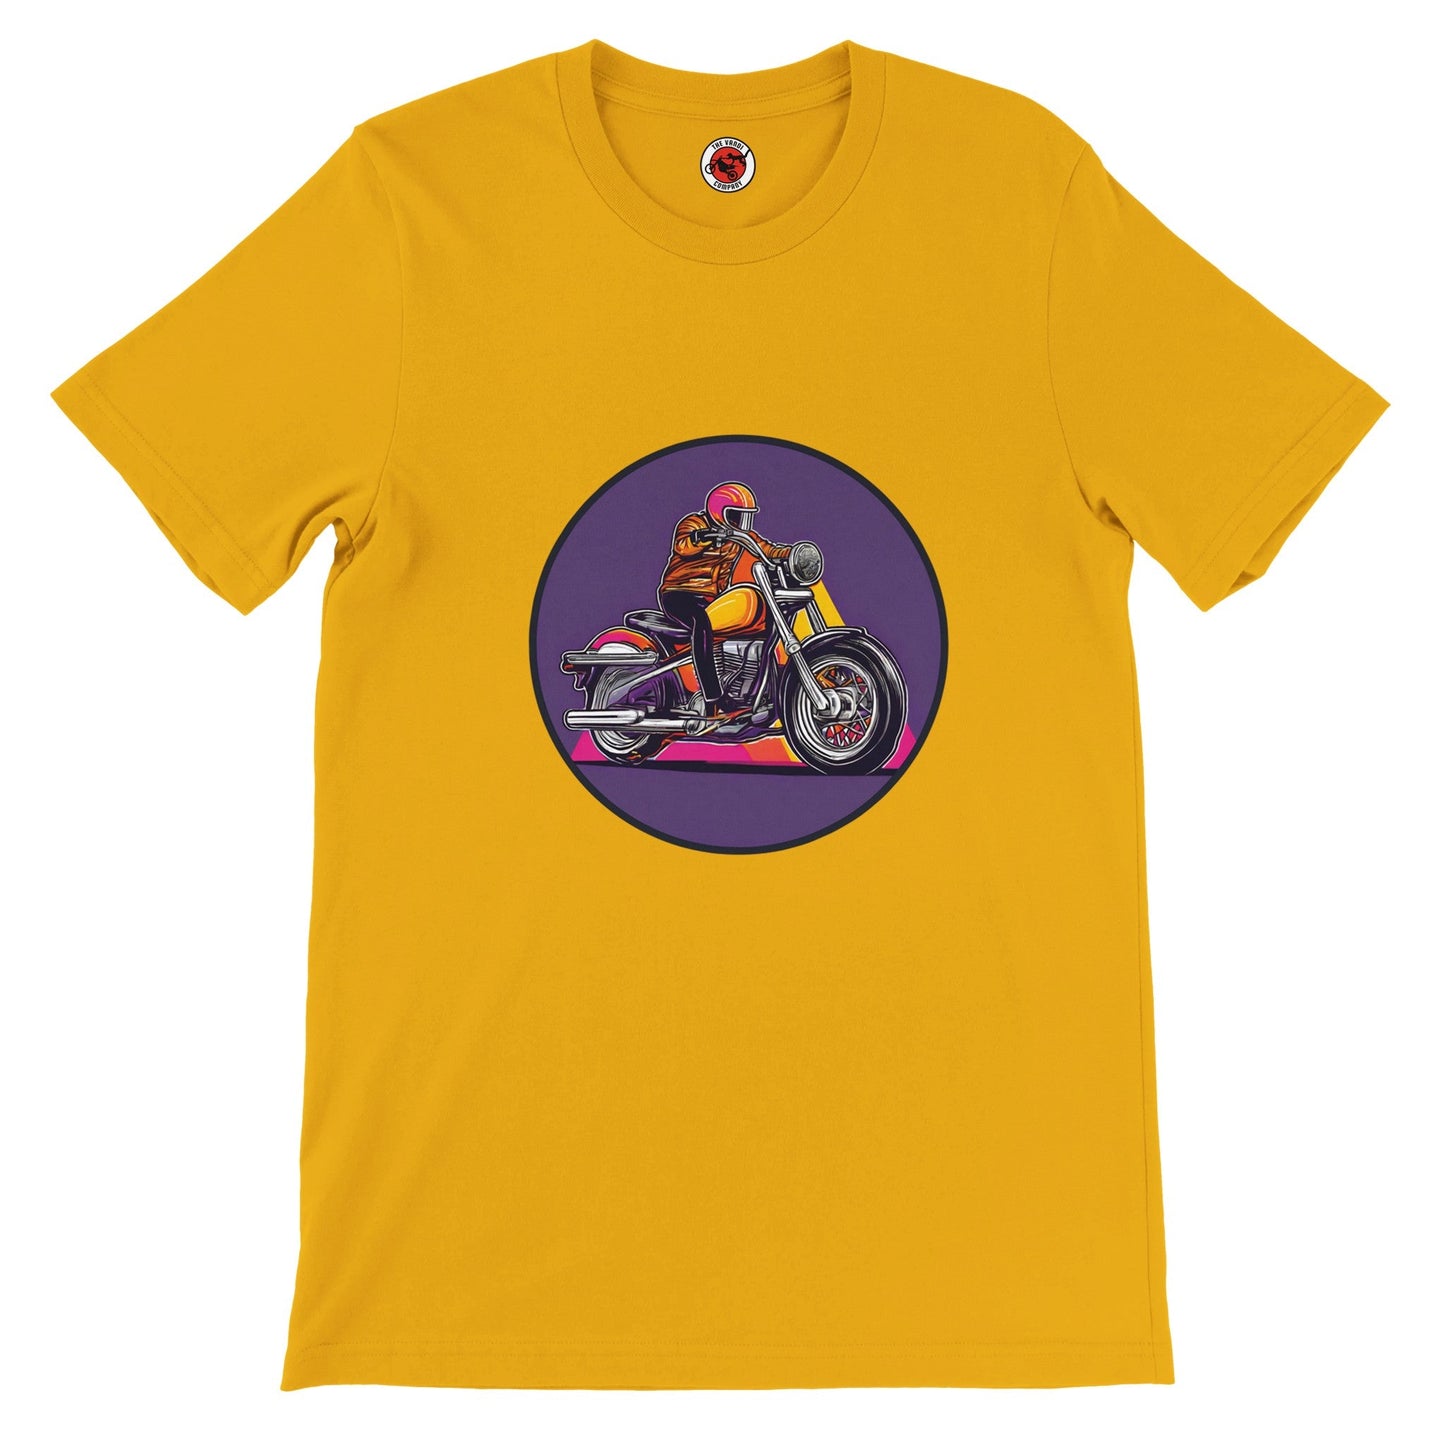 Men's Premium Crewneck T-shirt - Ride - The Vandi Company